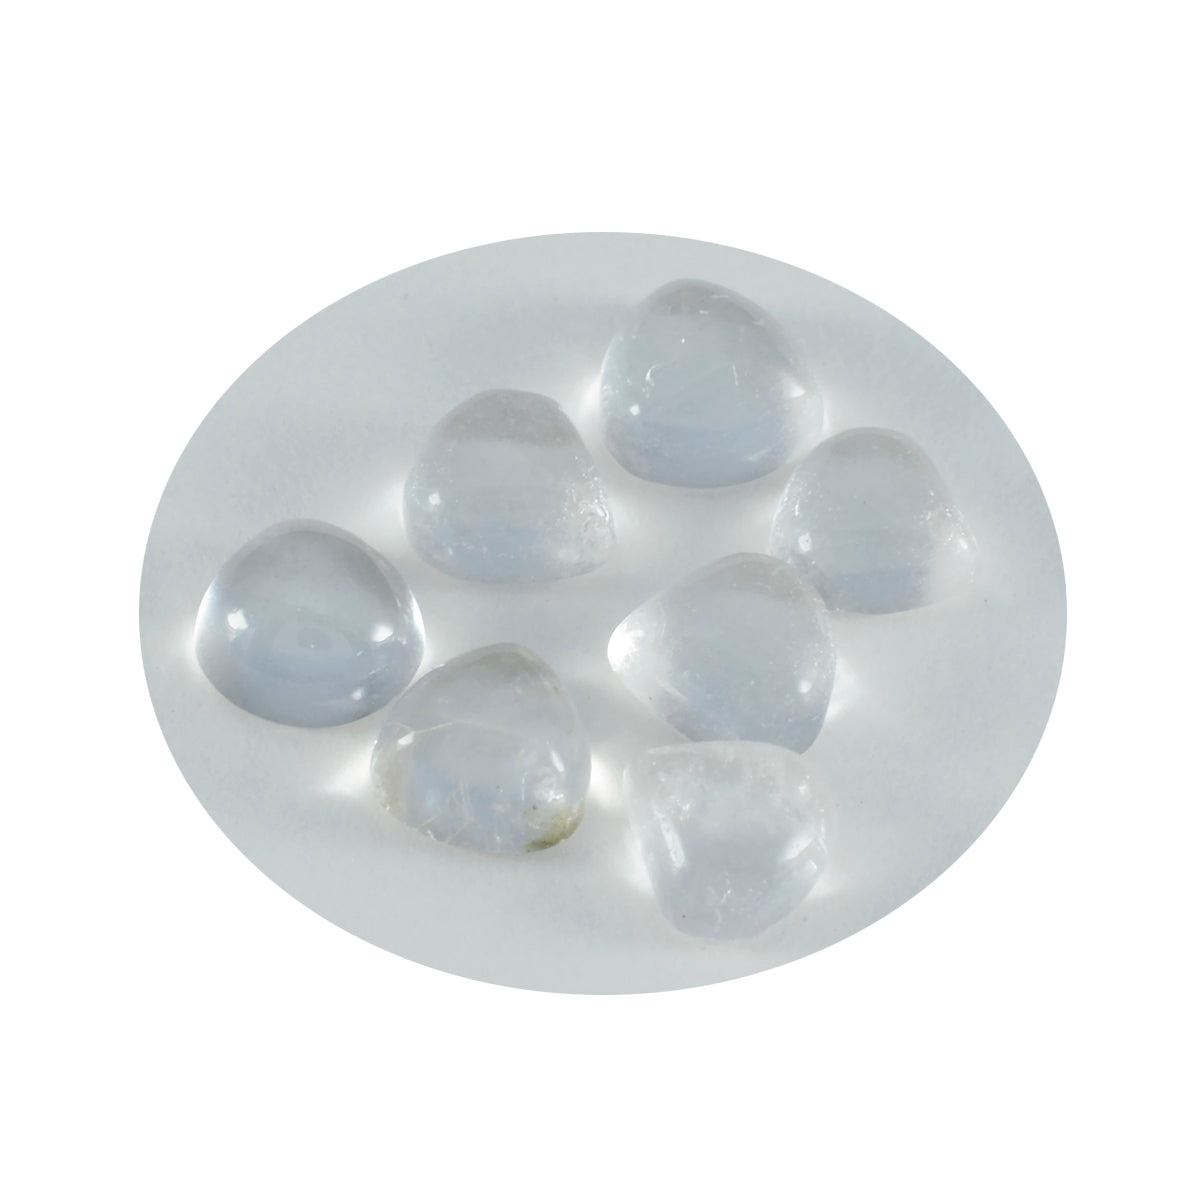 riyogems 1 cabochon di quarzo bianco cristallo 10x10 mm a forma di cuore, una pietra preziosa sfusa di qualità